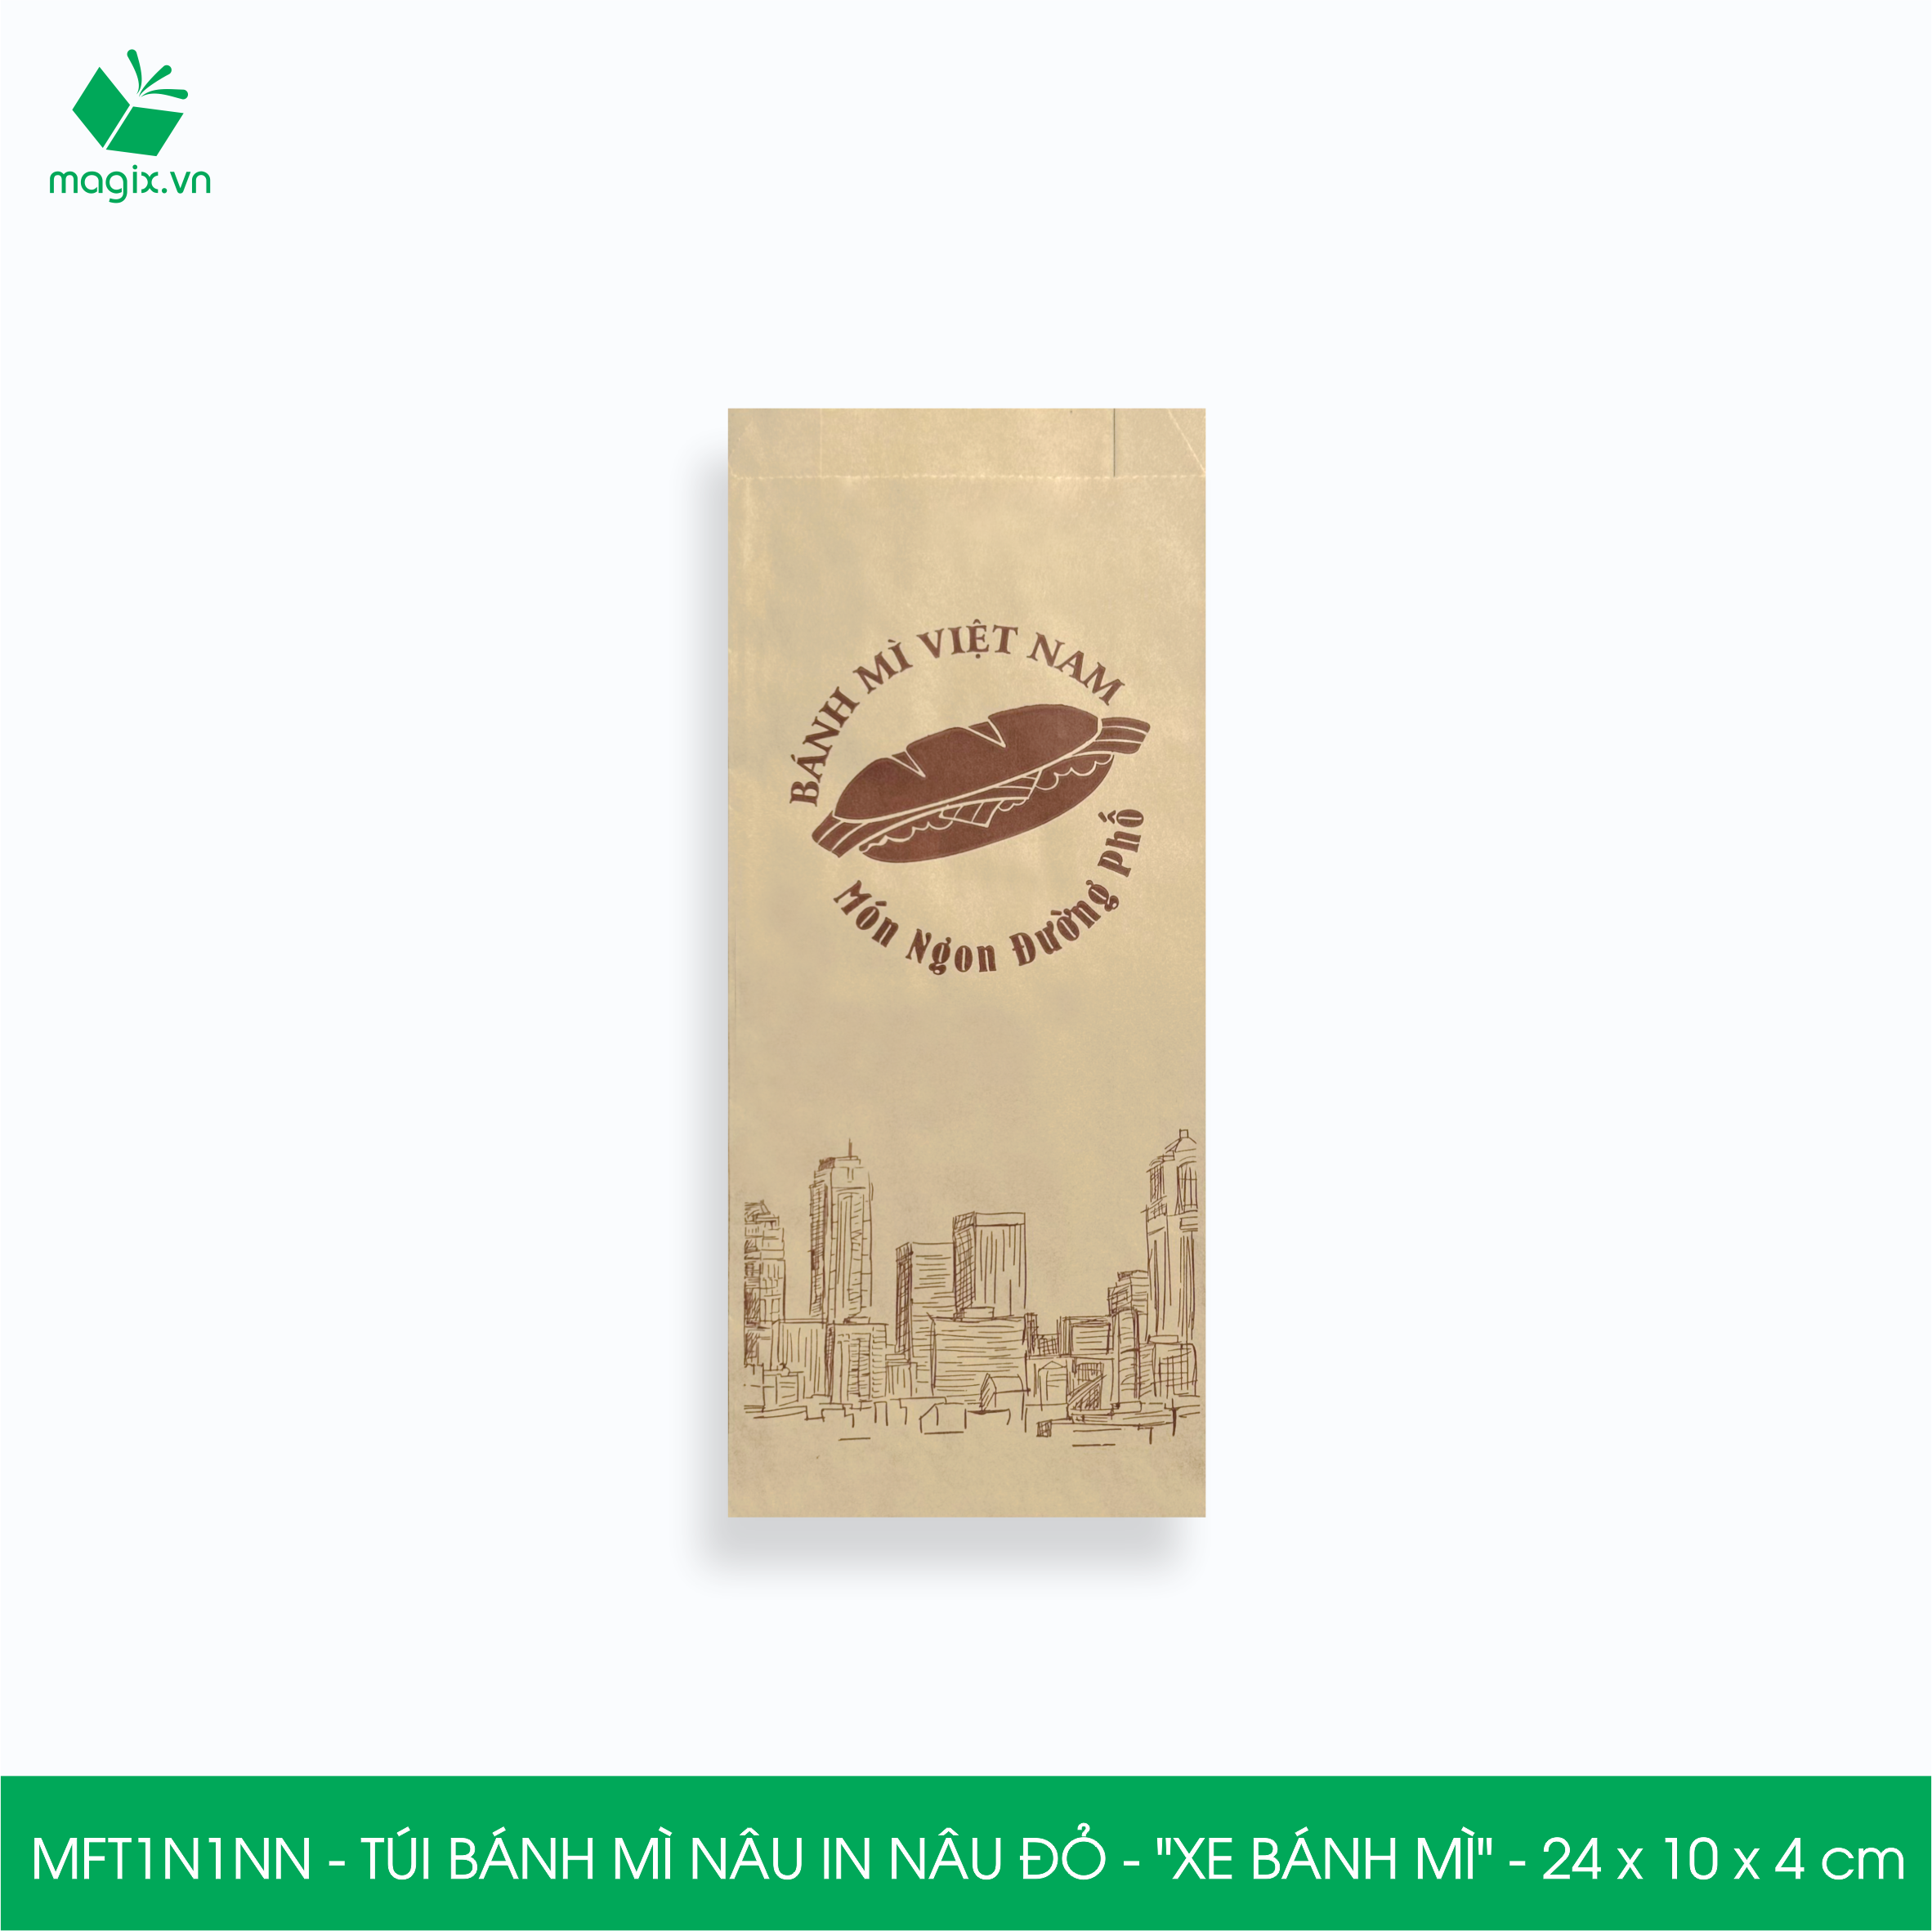 MFT1N1NN - 24x10x4 cm - 1000 Túi bánh mì Nâu, in sẵn họa tiết XE BÁNH MÌ - Bao bánh mì Túi giấy thực phẩm an toàn